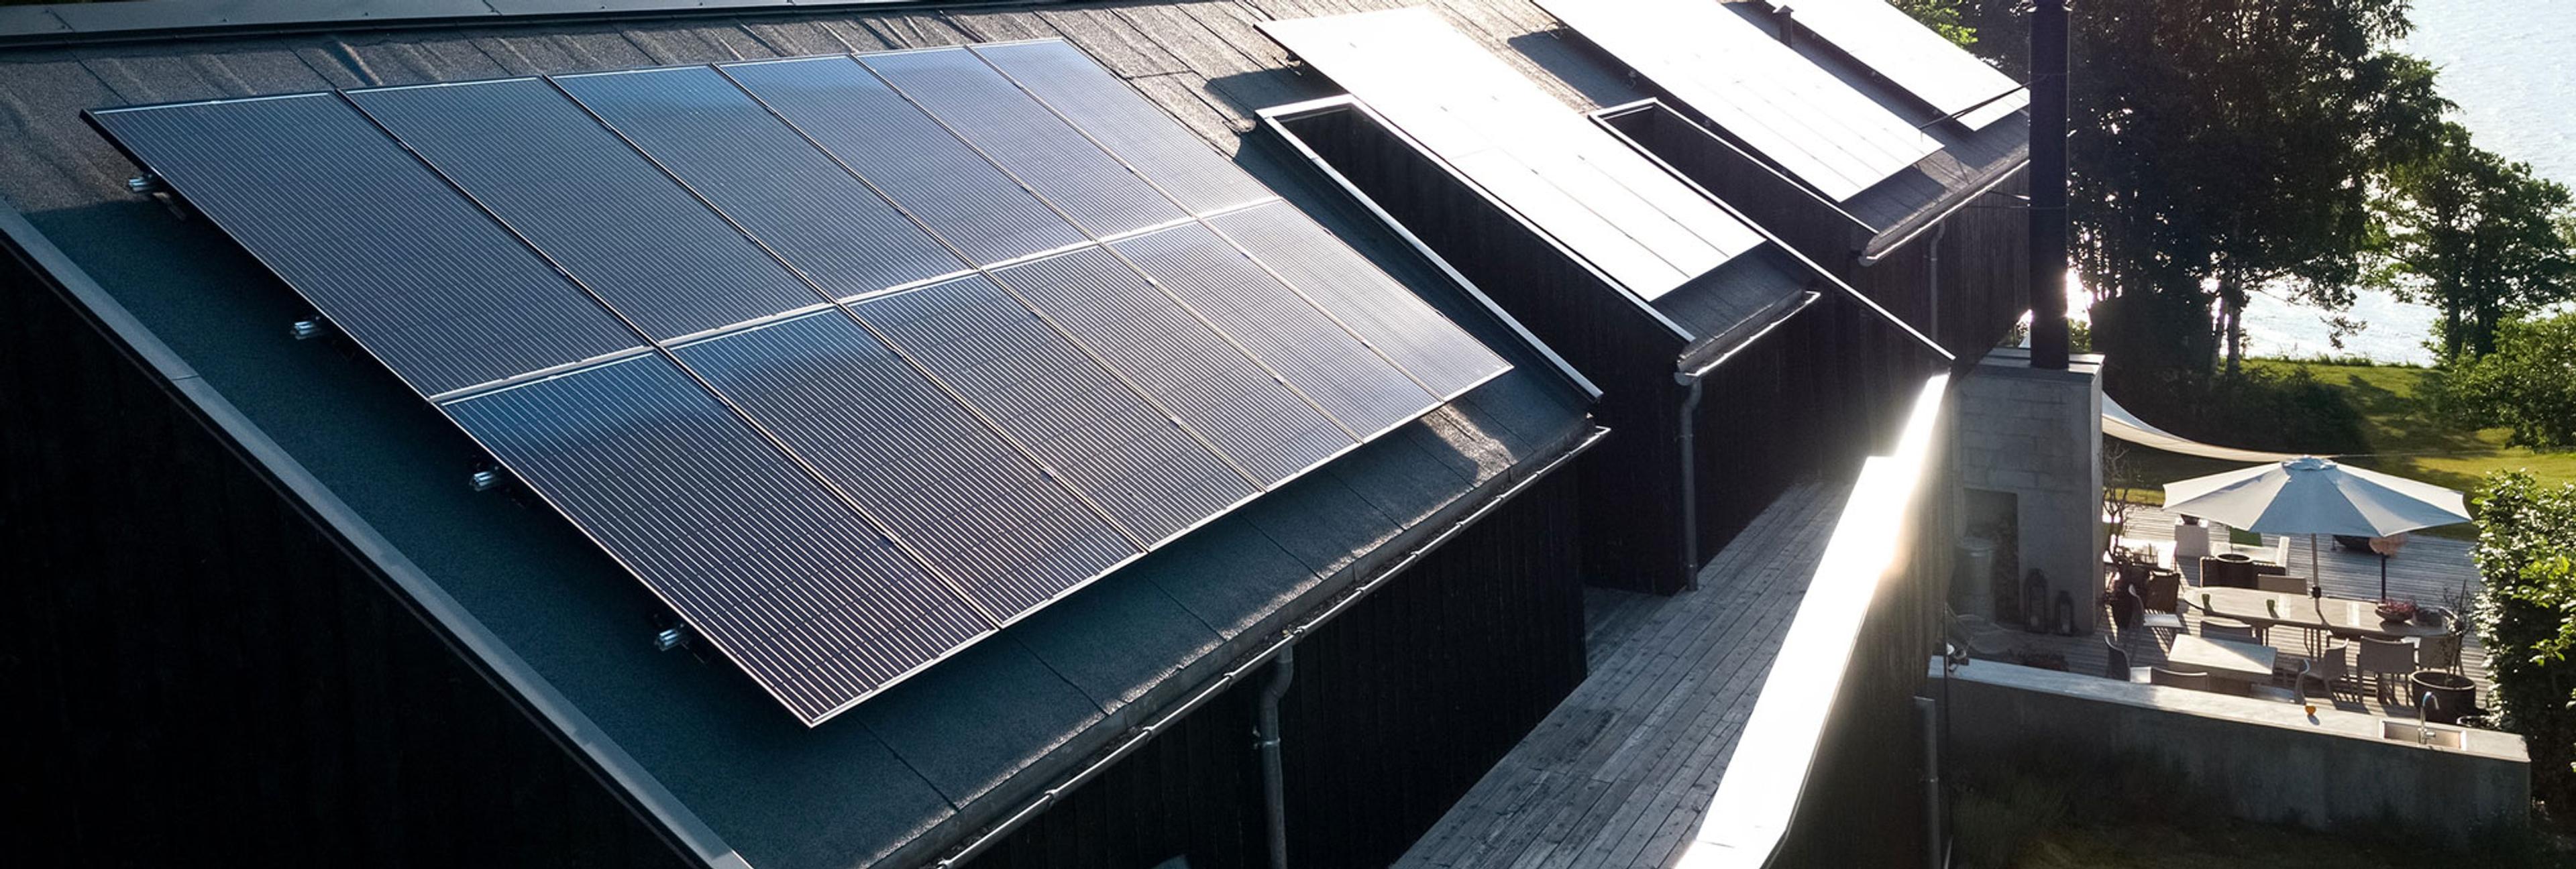 solcellepaneler installert på et tak